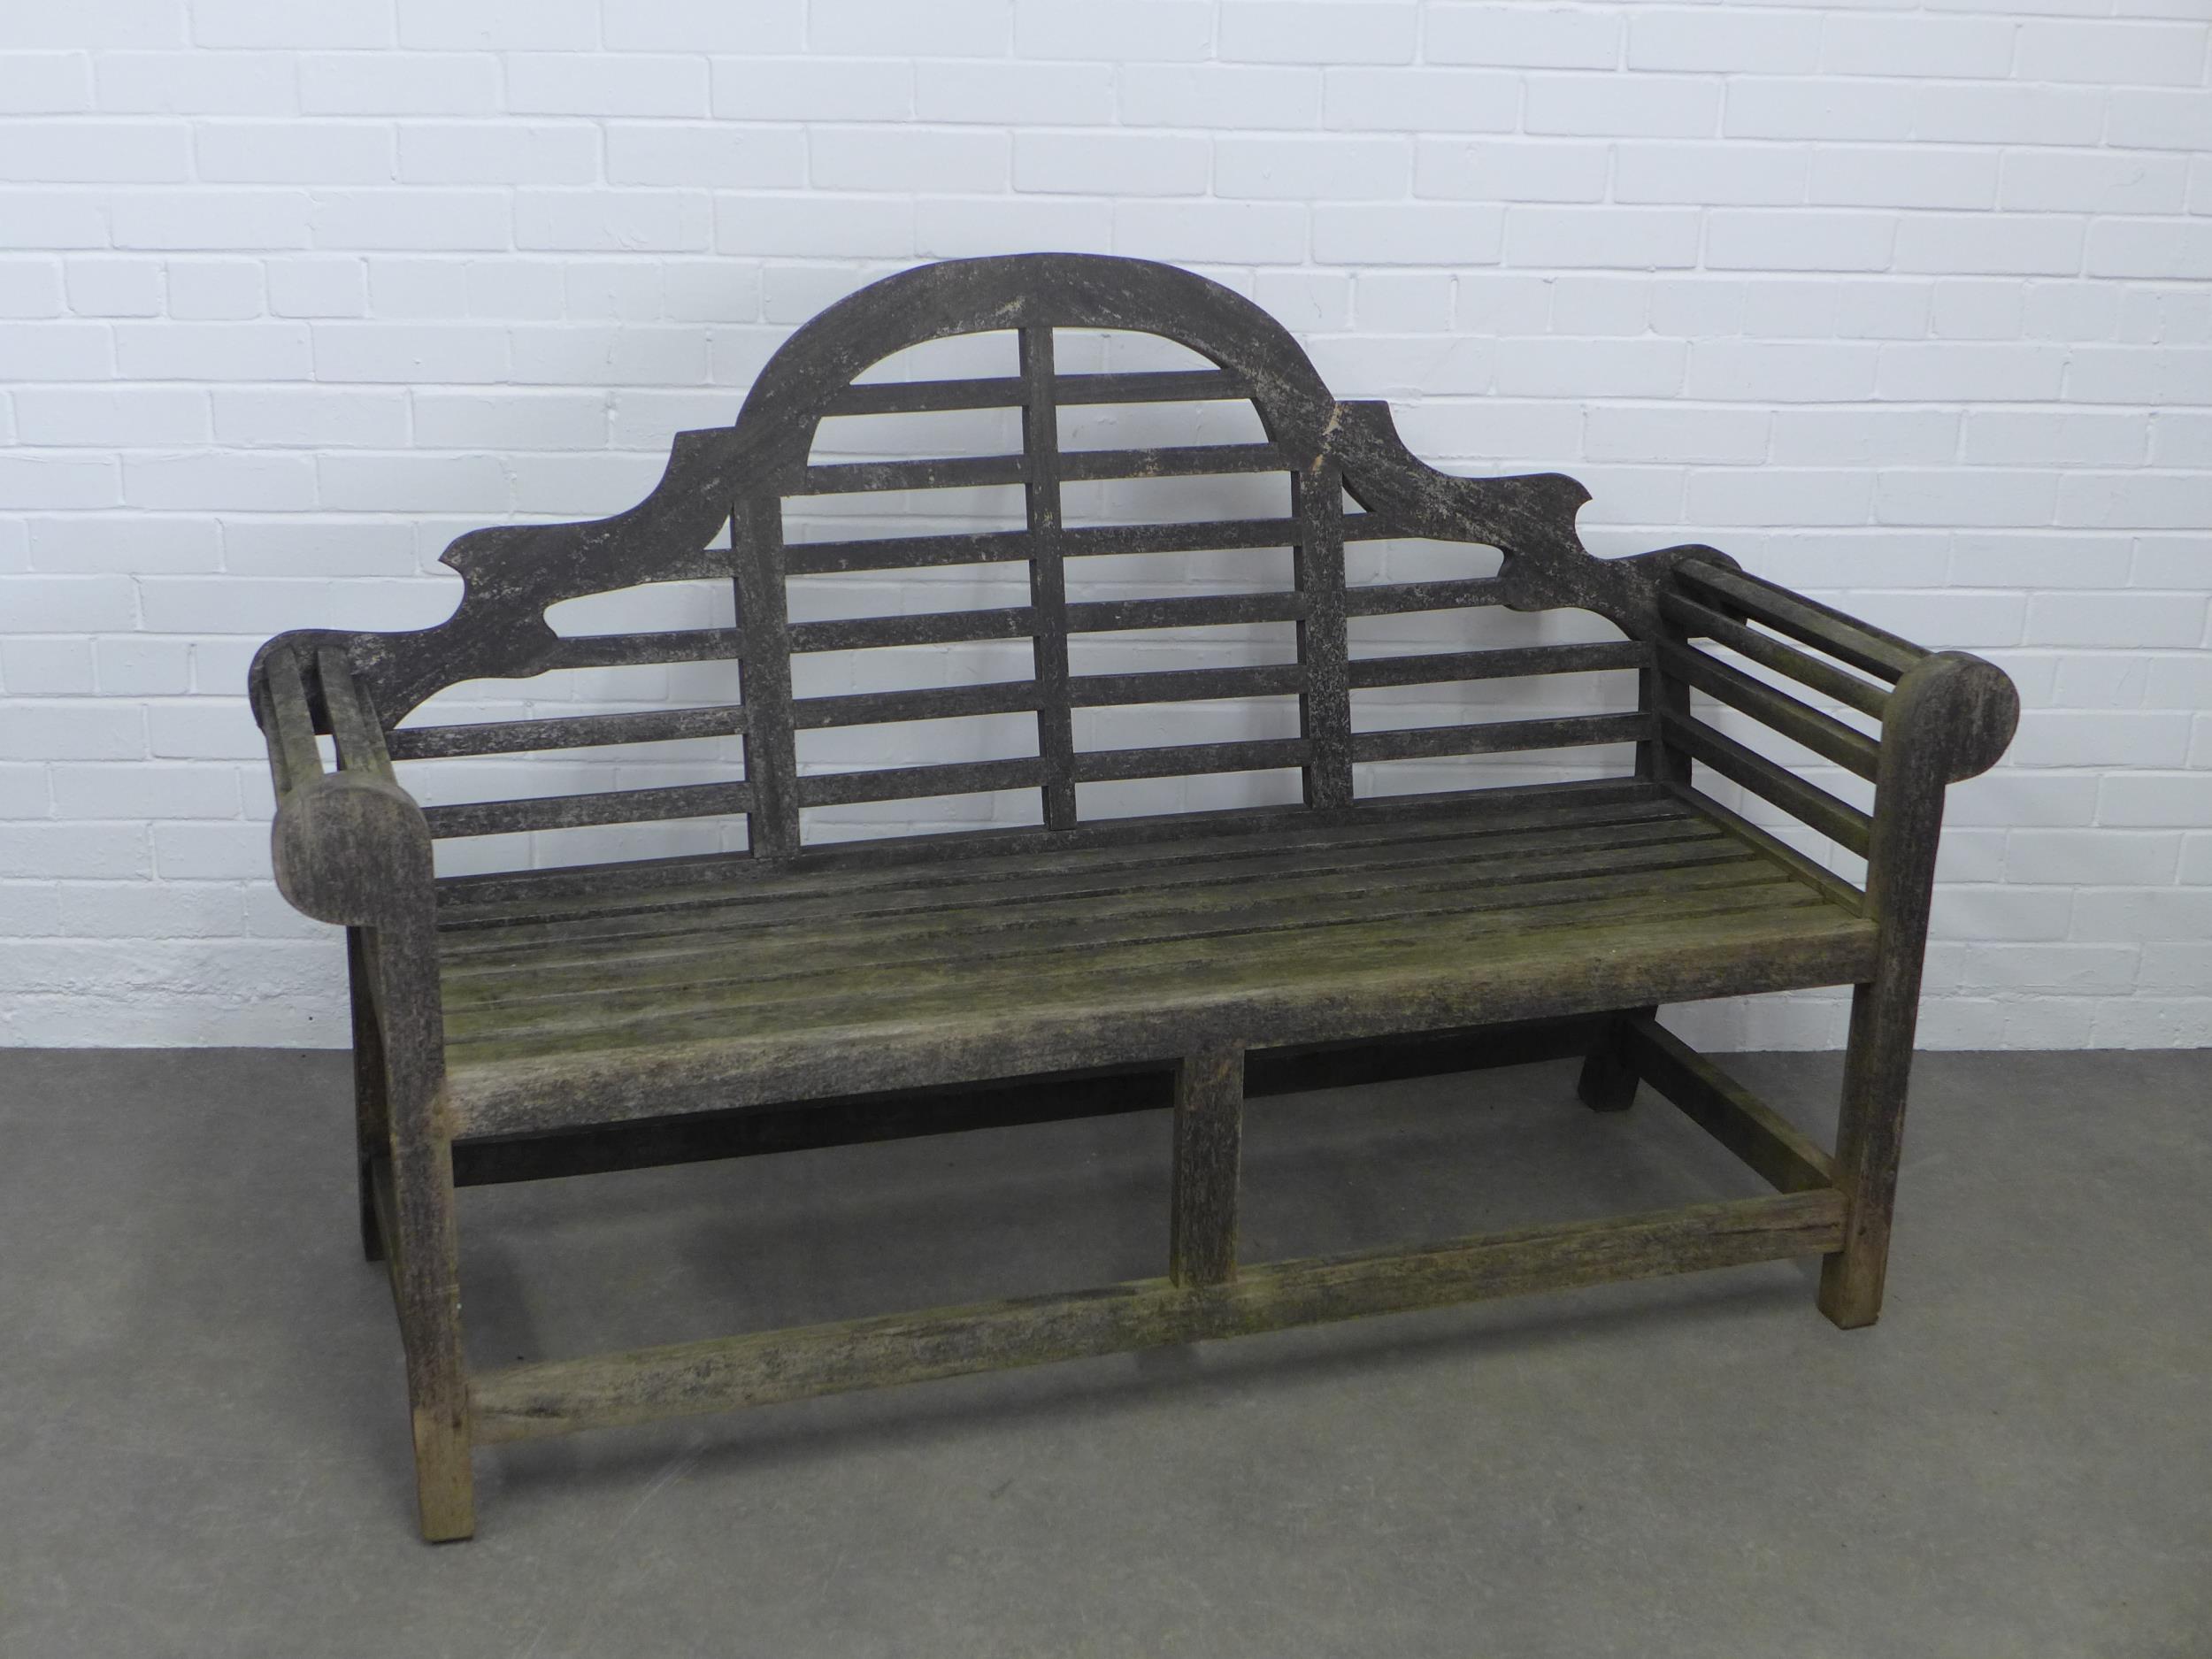 Lutyens style garden bench, 156 x 104cm. - Image 3 of 3